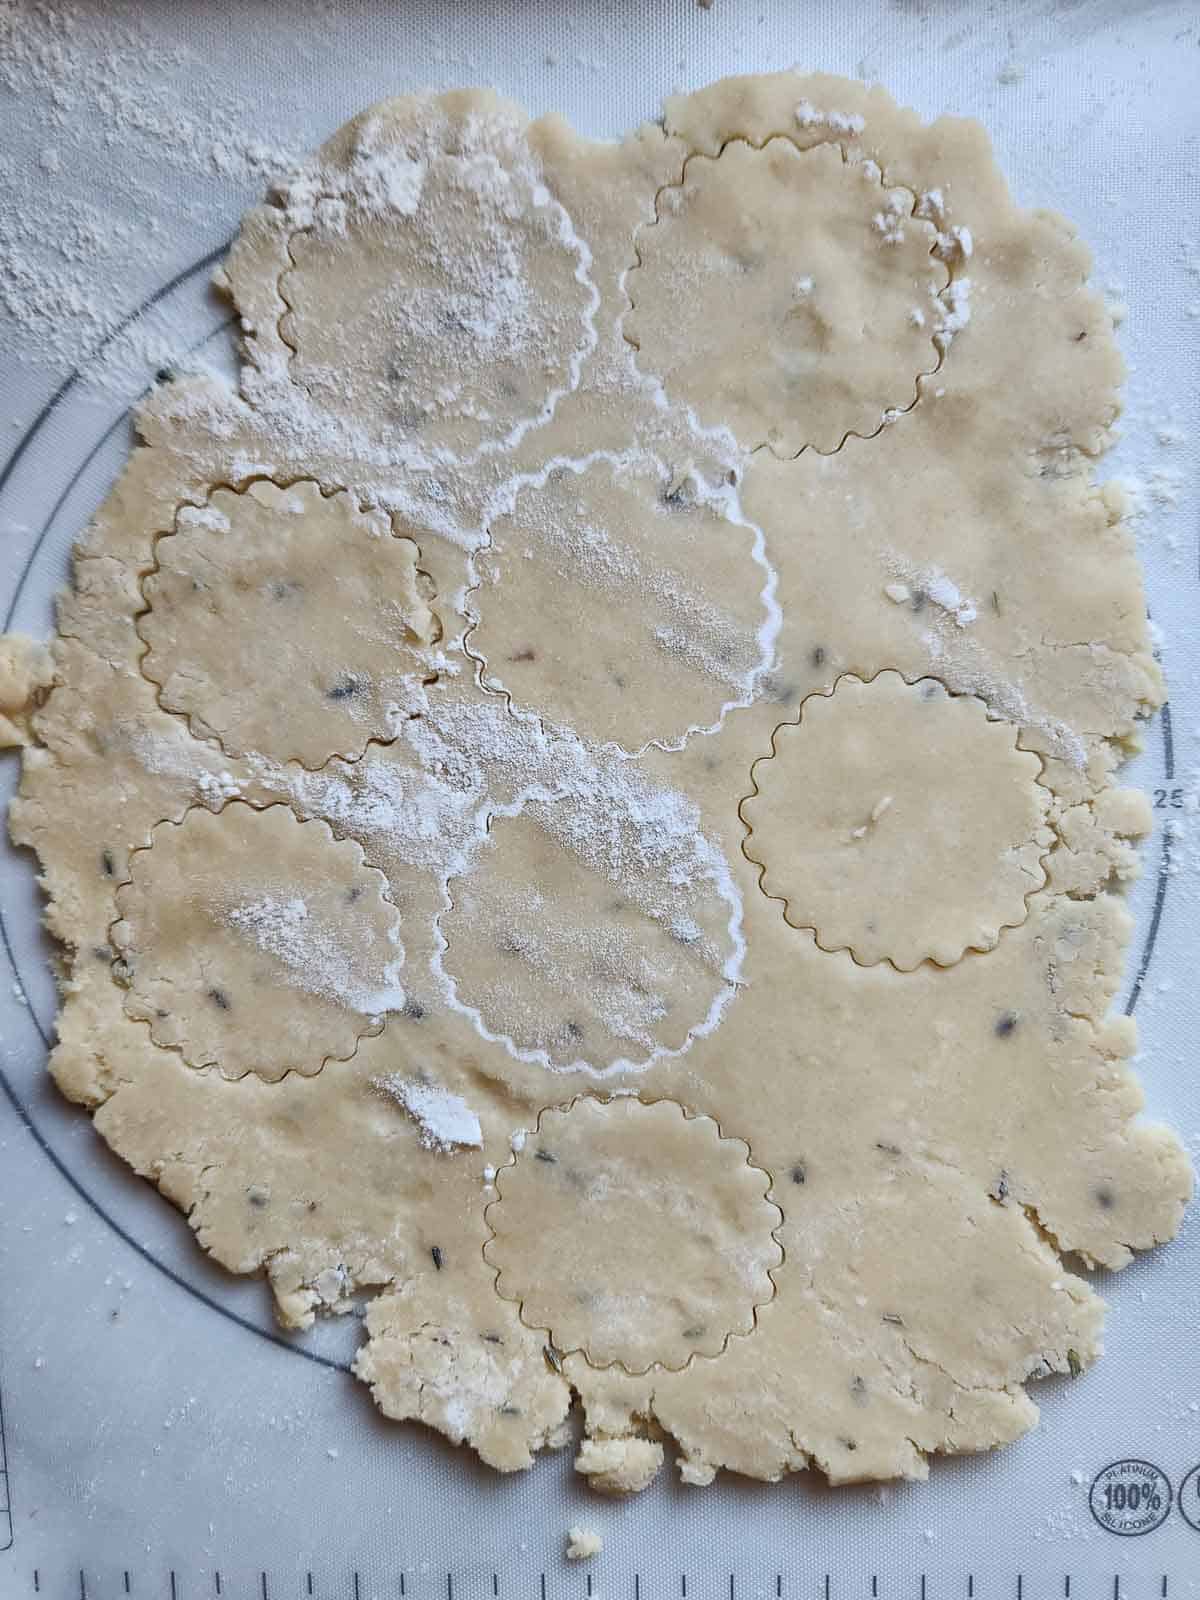 Lemon lavender shortbread dough cut out with a cookie cutter.